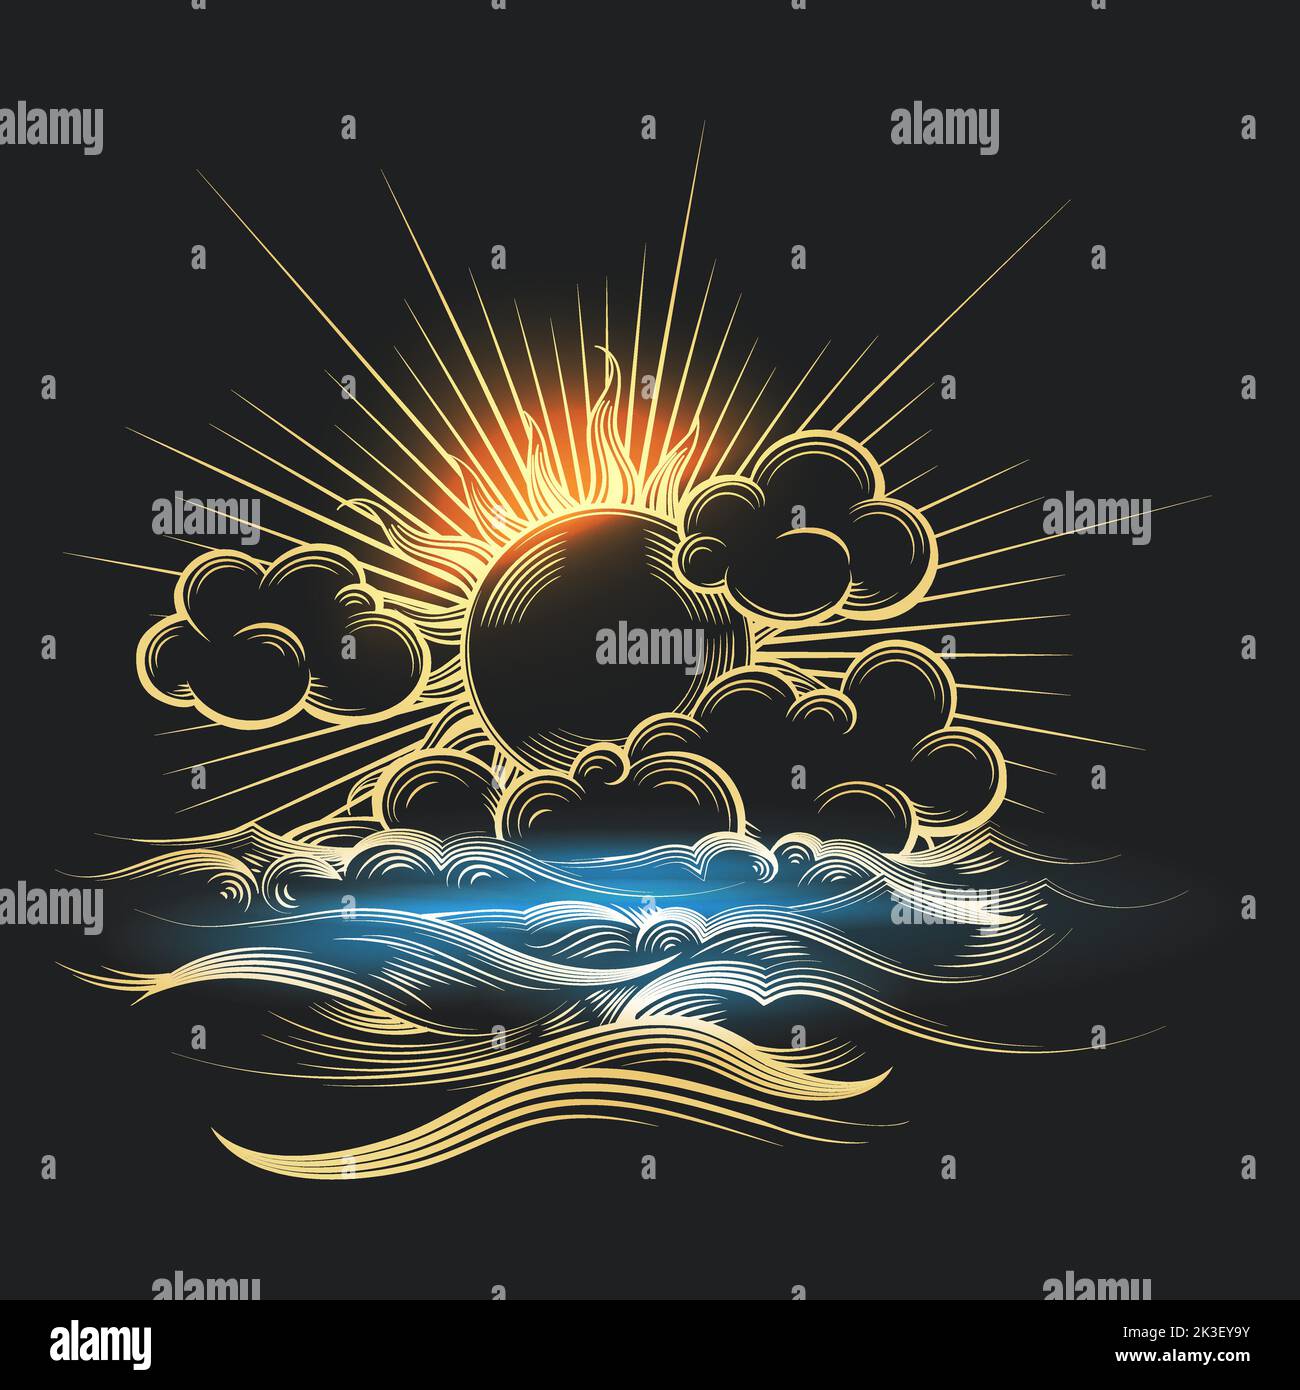 Goldene Sonne und Meer auf schwarzem Hintergrund im Gravurstil gezeichnet. Vektorgrafik Stock Vektor